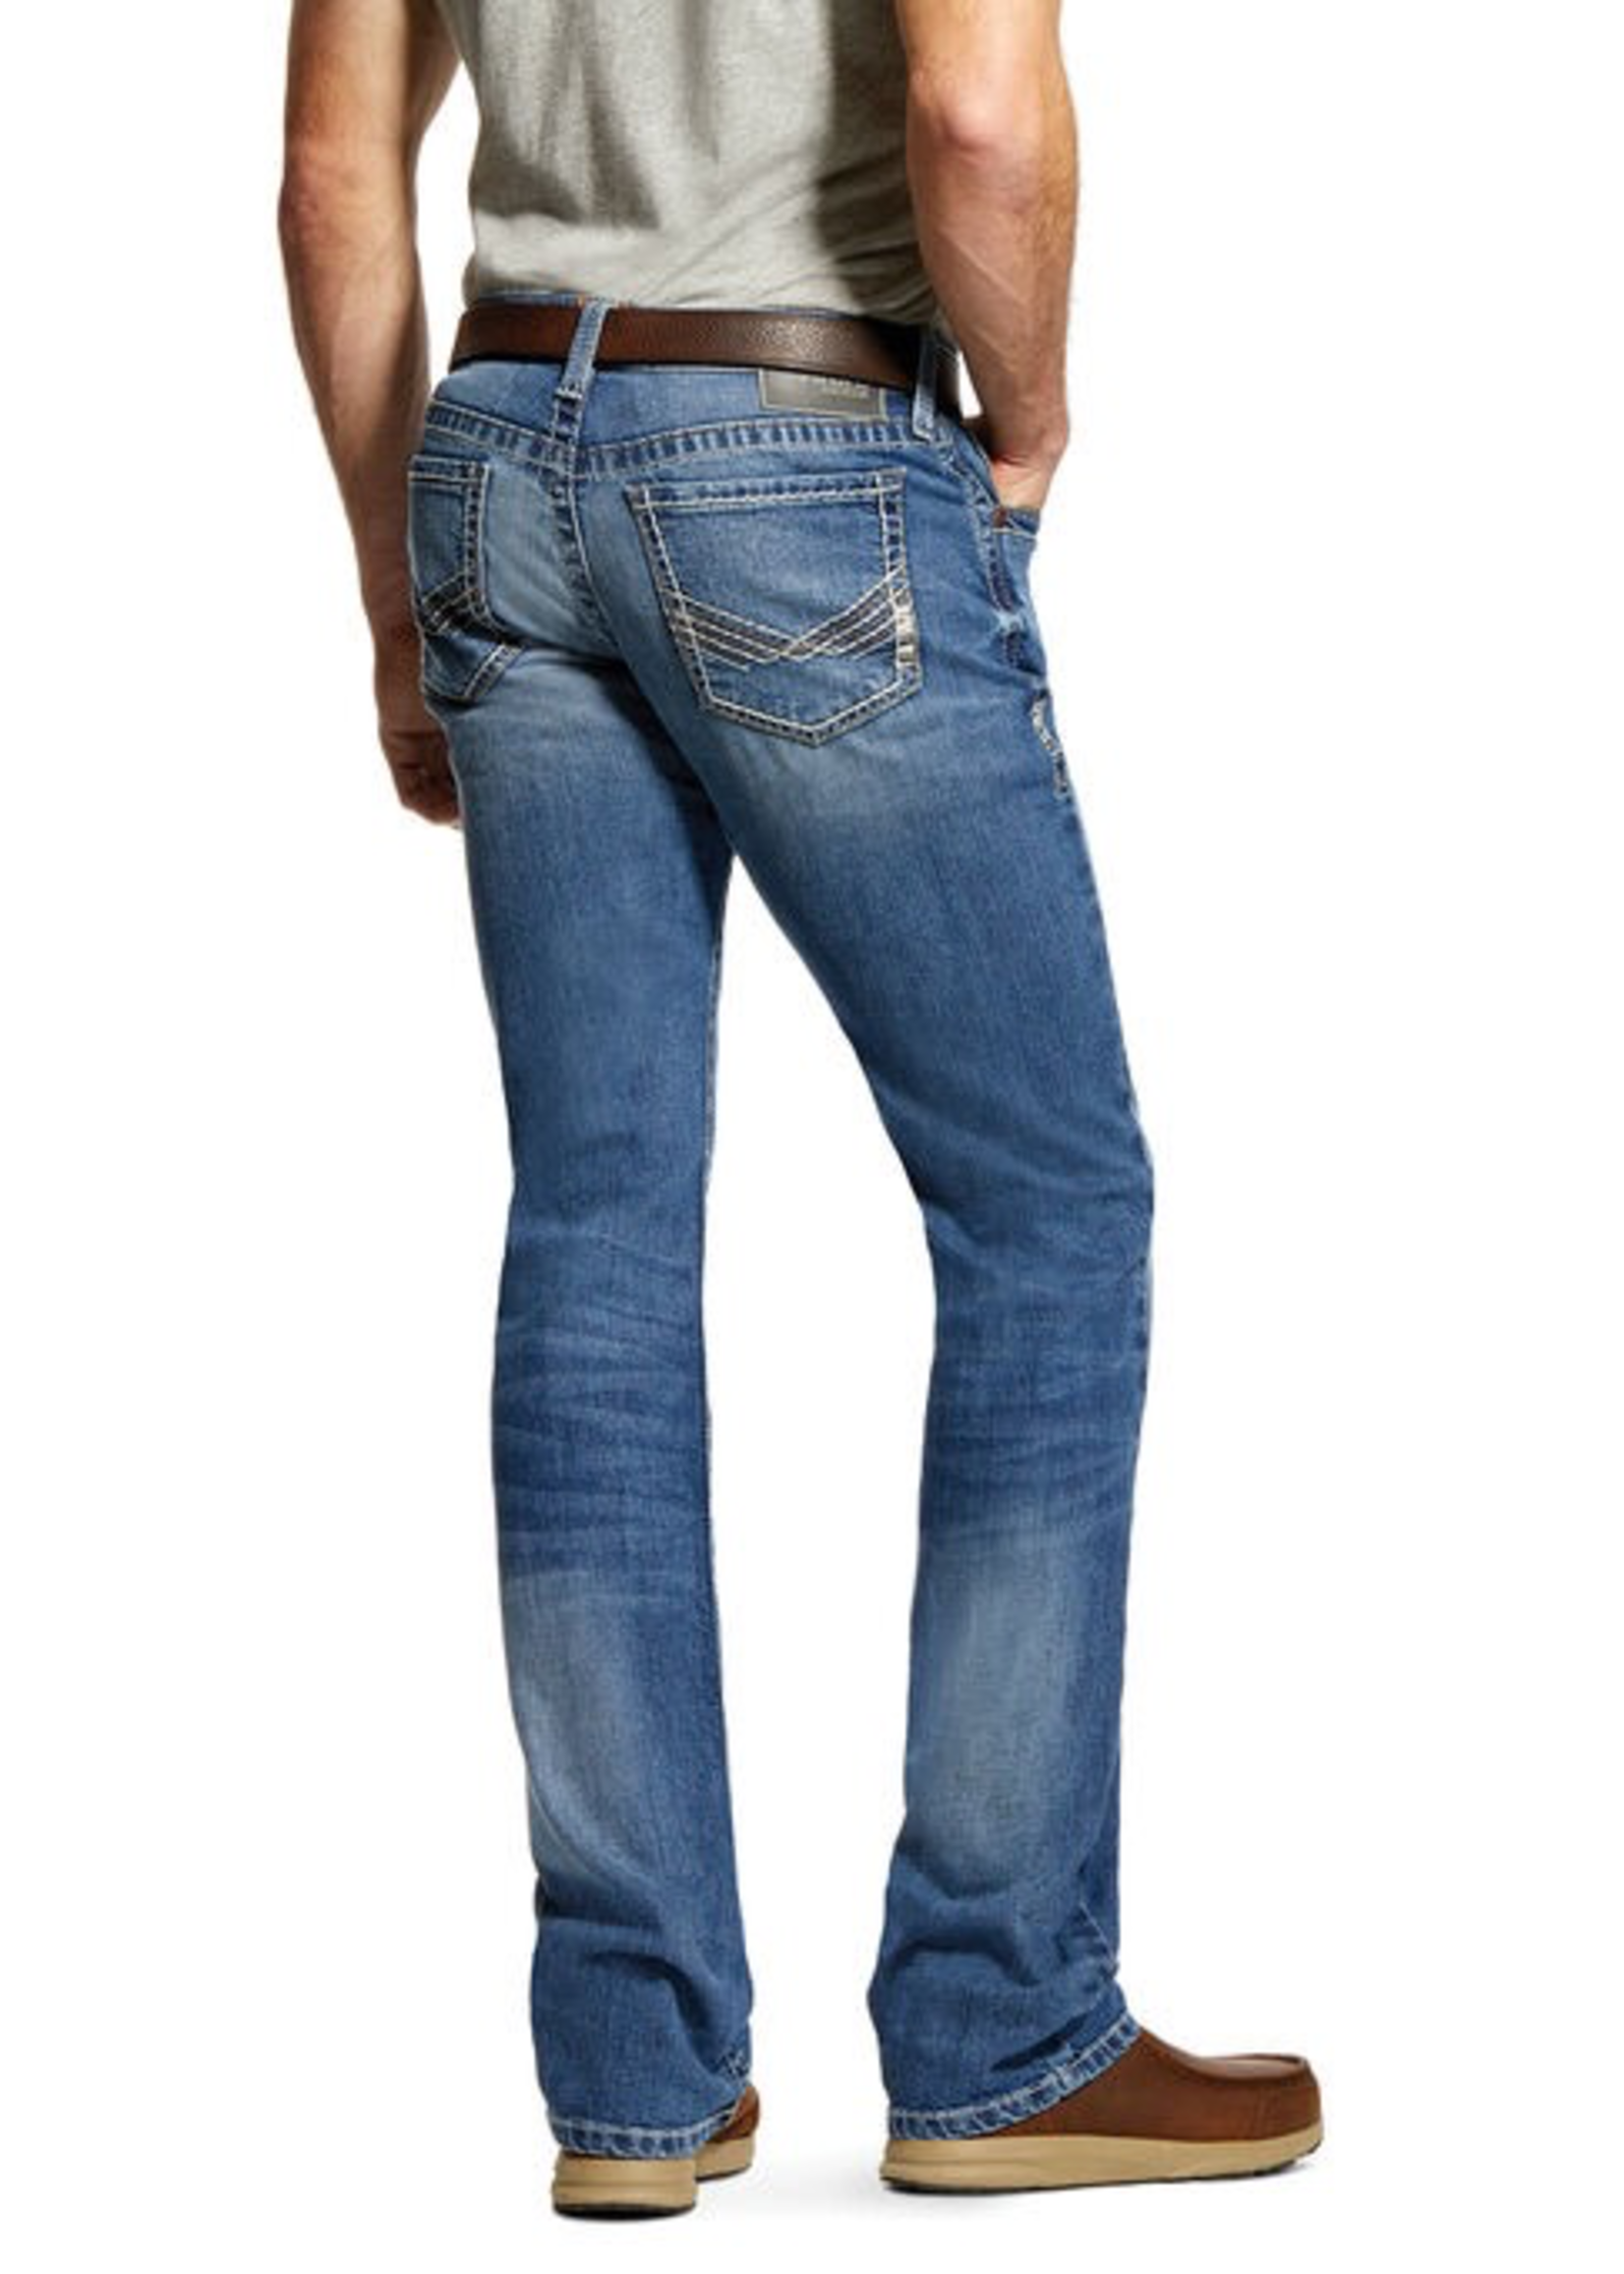 Jeans-Men ARIAT 10028926 M7 Extra Slim Straight